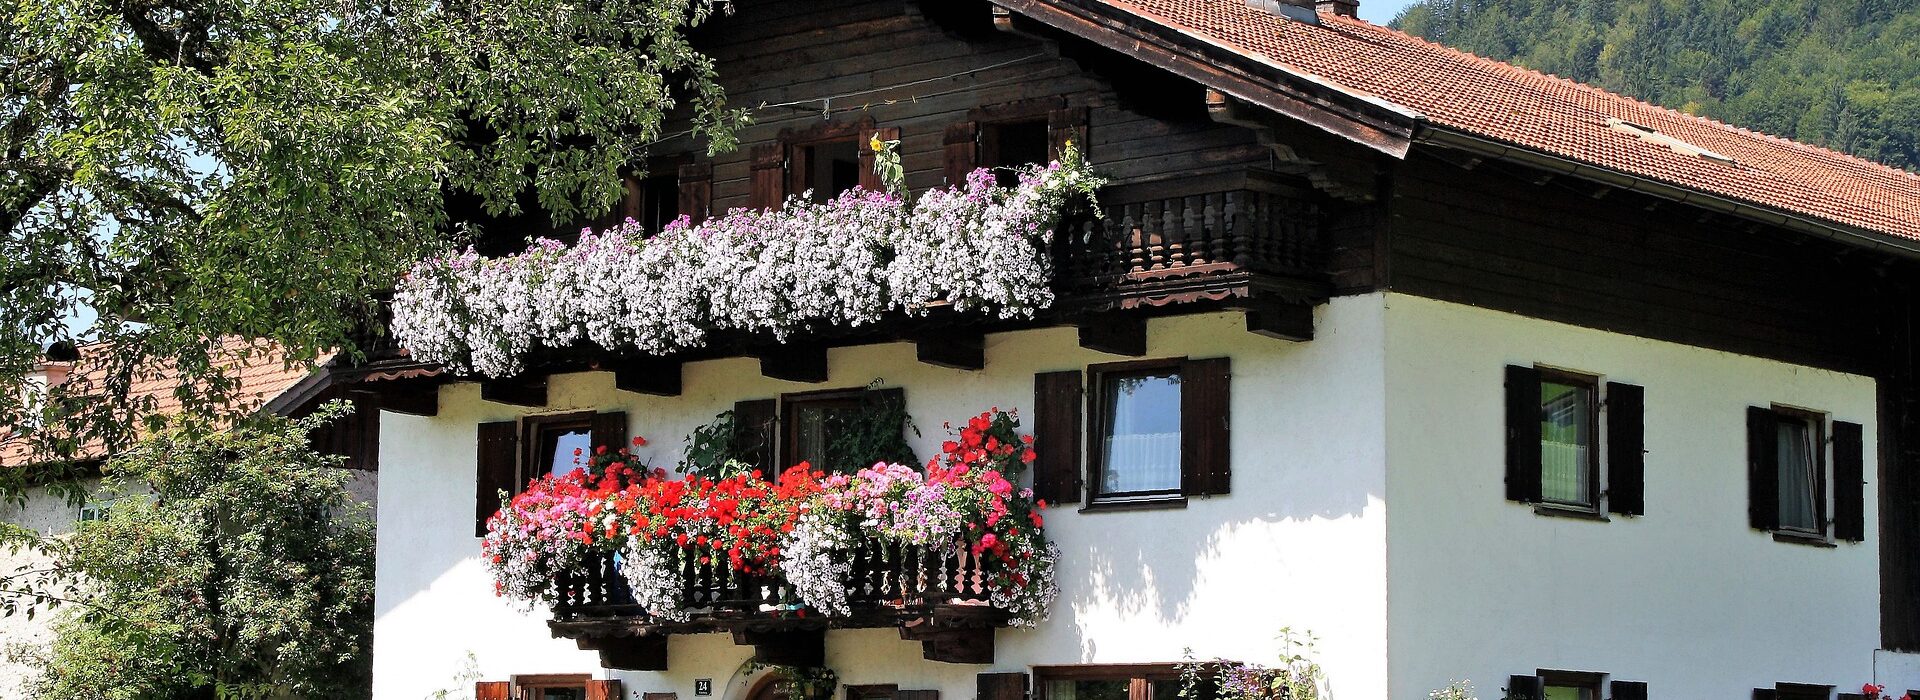 Ferienhaus in Bayern